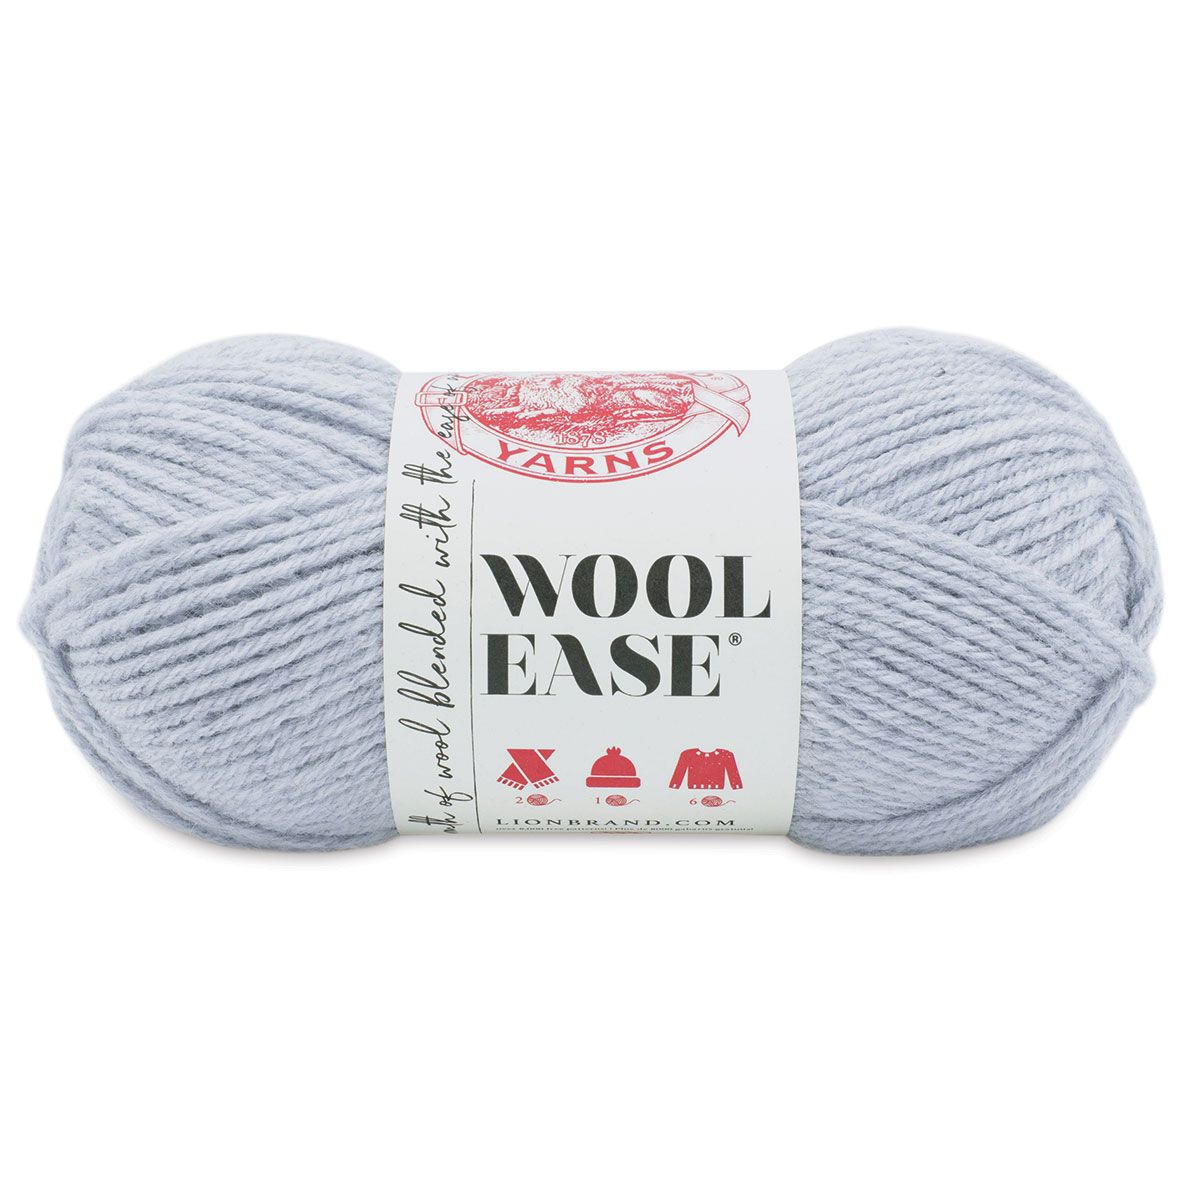 Oxford Grey Lion Brand Yarn 620-152 Wool-Ease Yarn Pack of 3 skeins 